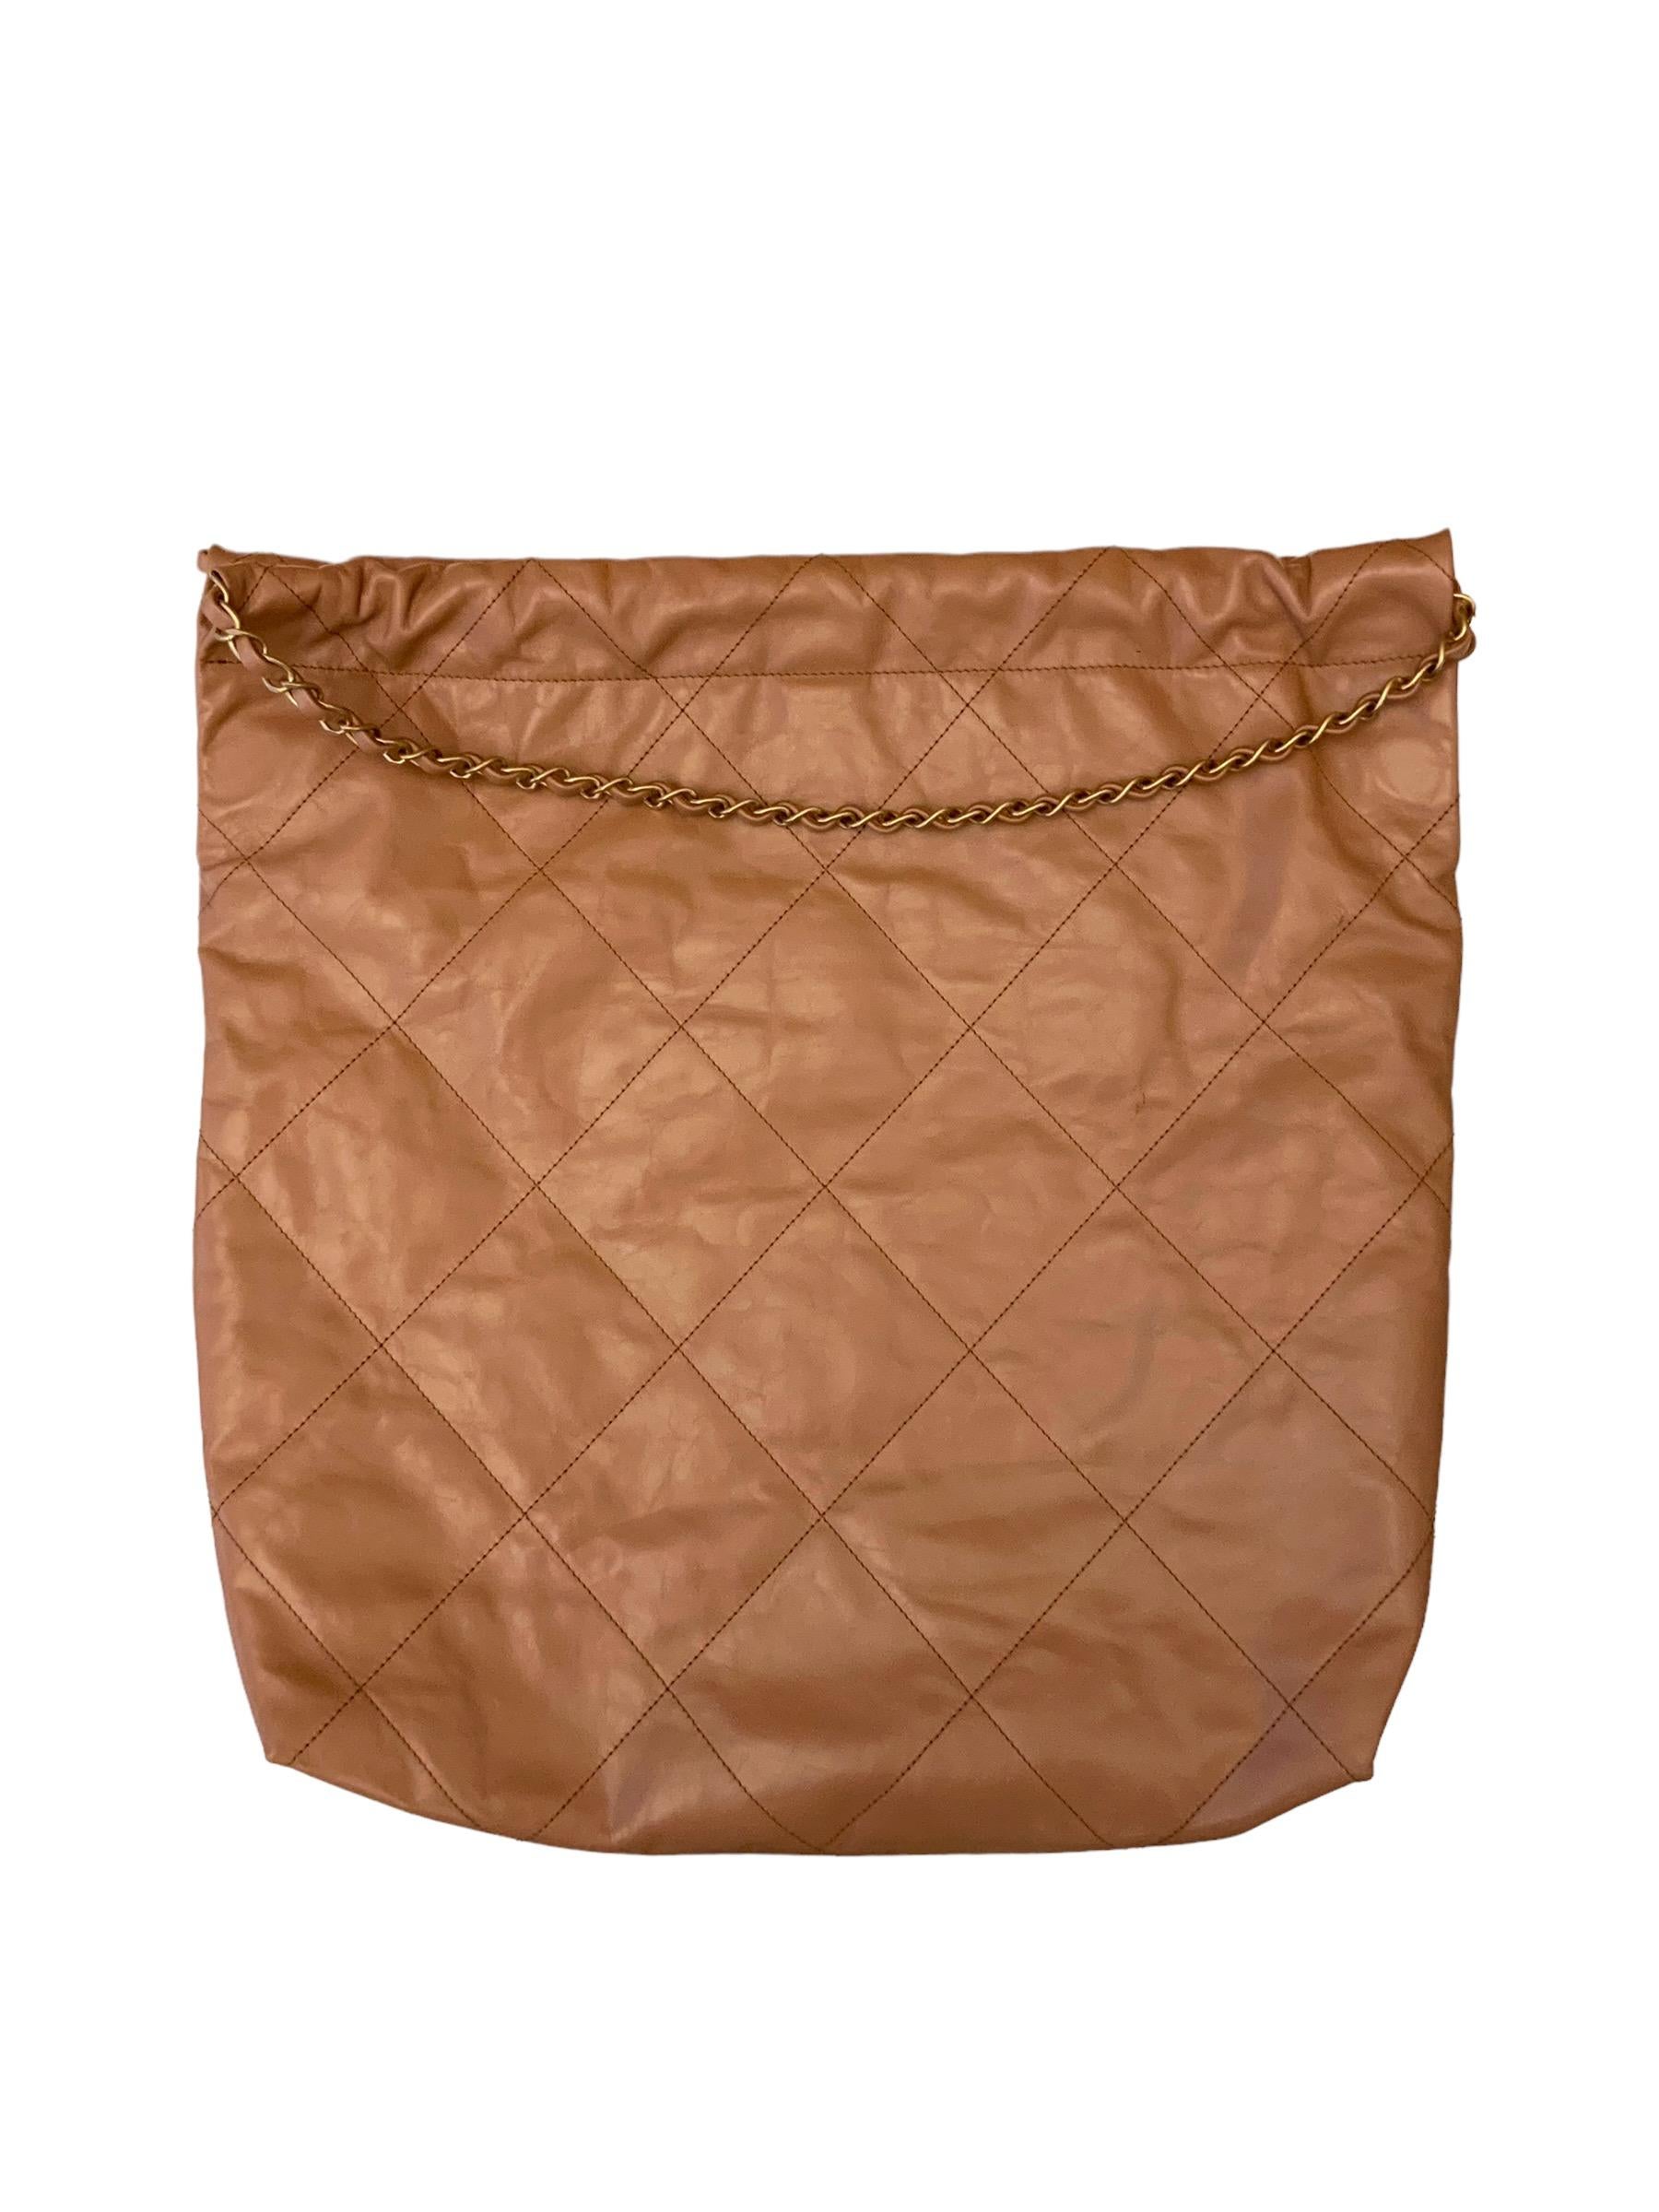 Chanel Goat Skin Bag - 3 For Sale on 1stDibs